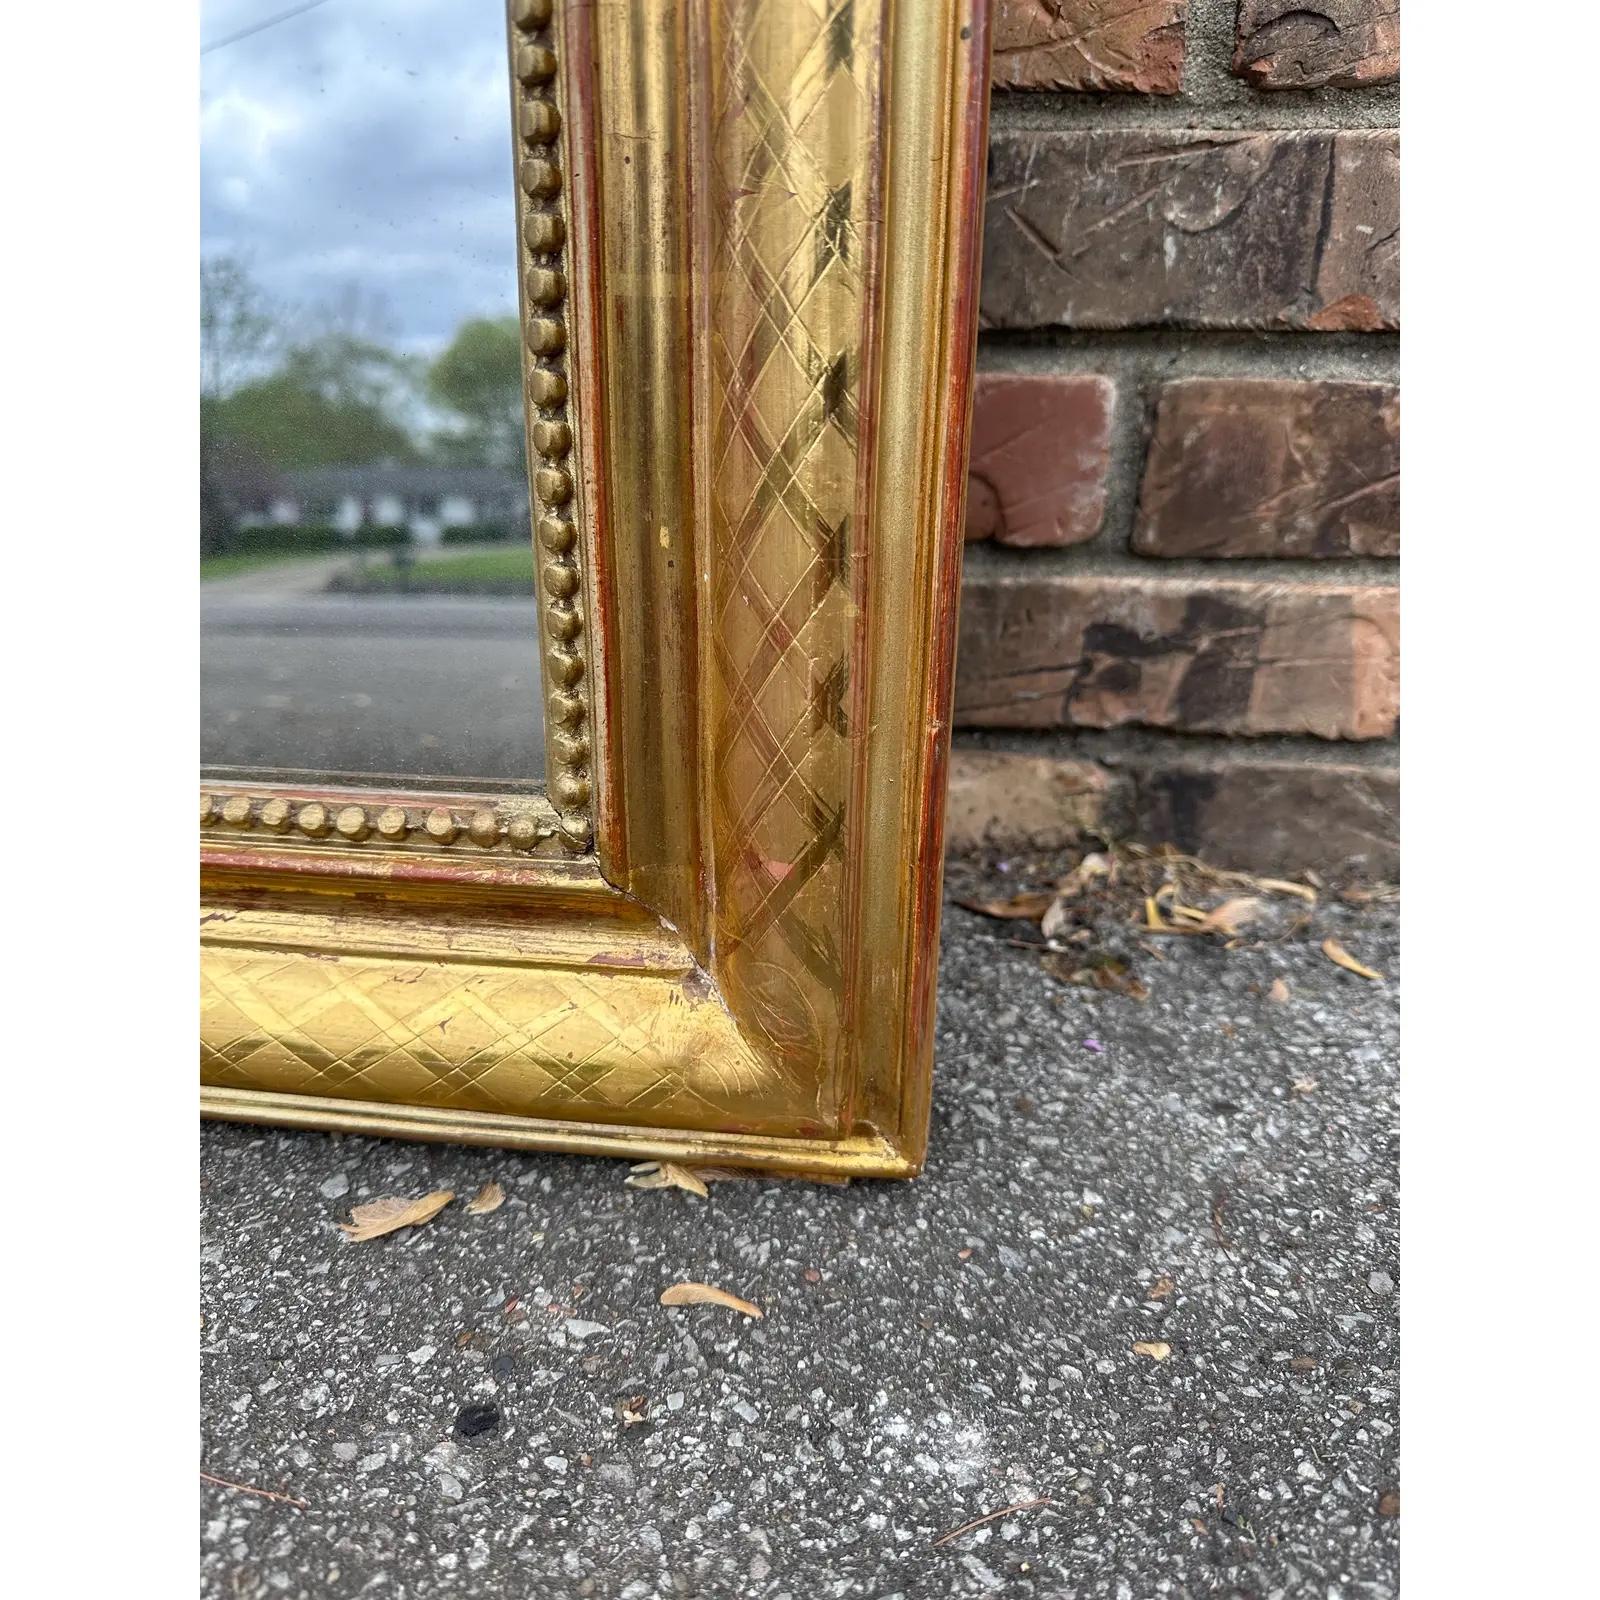 Dieser exquisite antike Louis-Philippe-Spiegel mit vergoldetem Finish verleiht jedem Raum mühelos zeitlosen Charme. Seine kunstvollen Details und sein klassisches Design machen ihn zu einem fesselnden Mittelpunkt, der Stil und Geschichte in einem